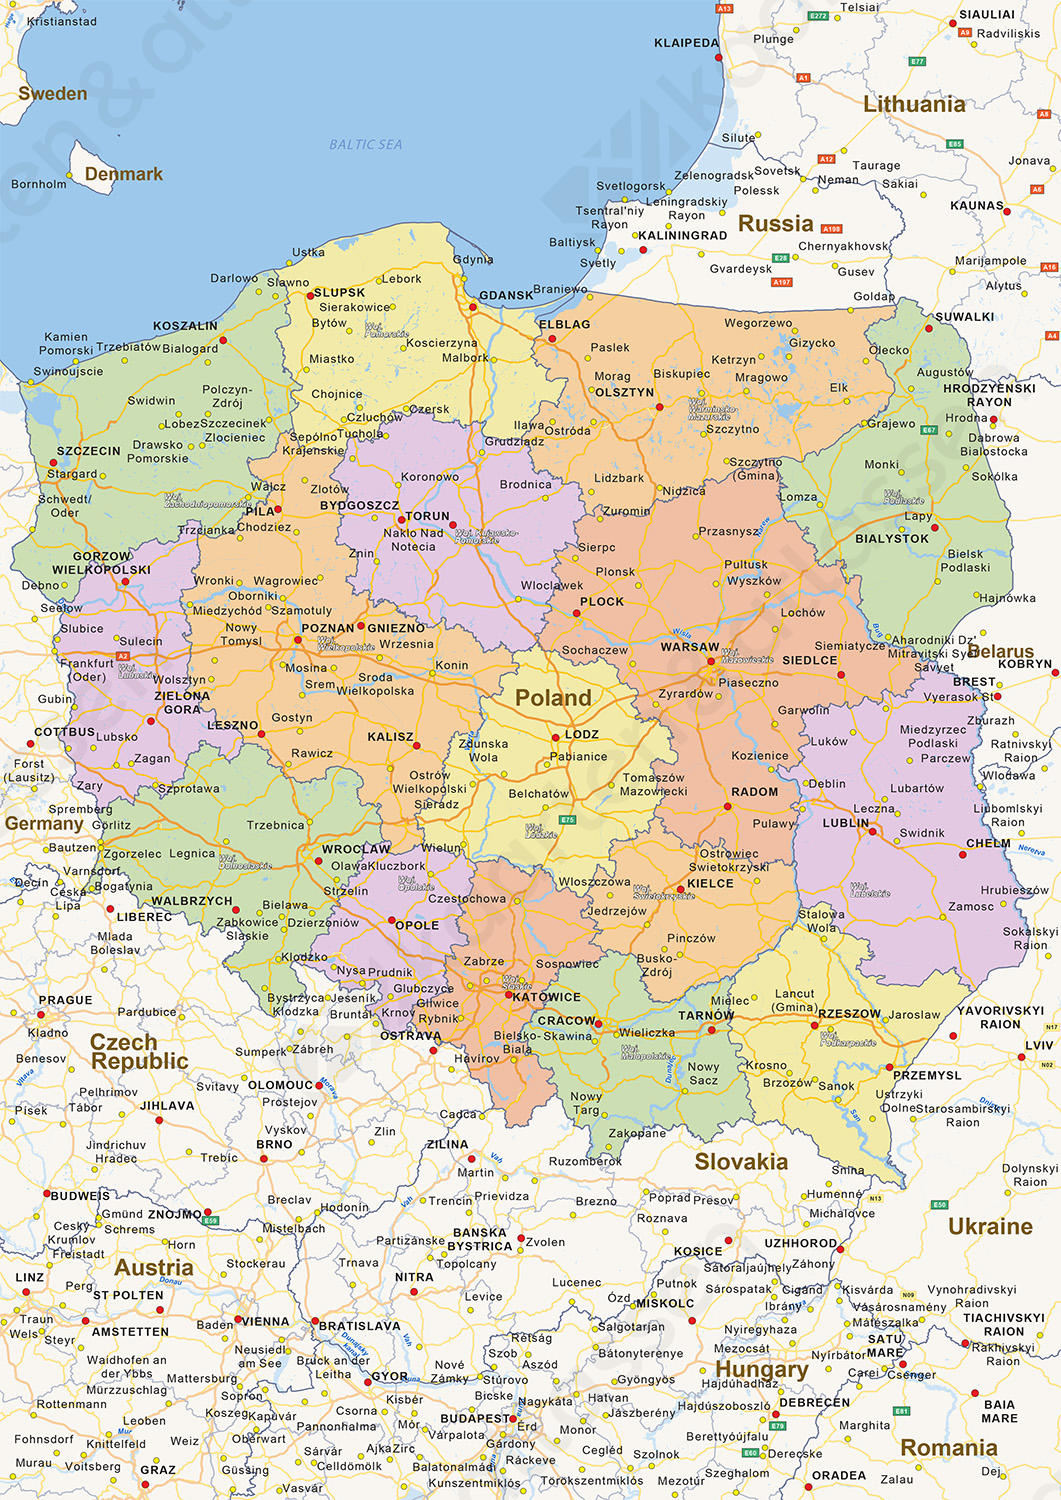 Digitale Staatkundige landkaart Polen 1458 | Kaarten en ...